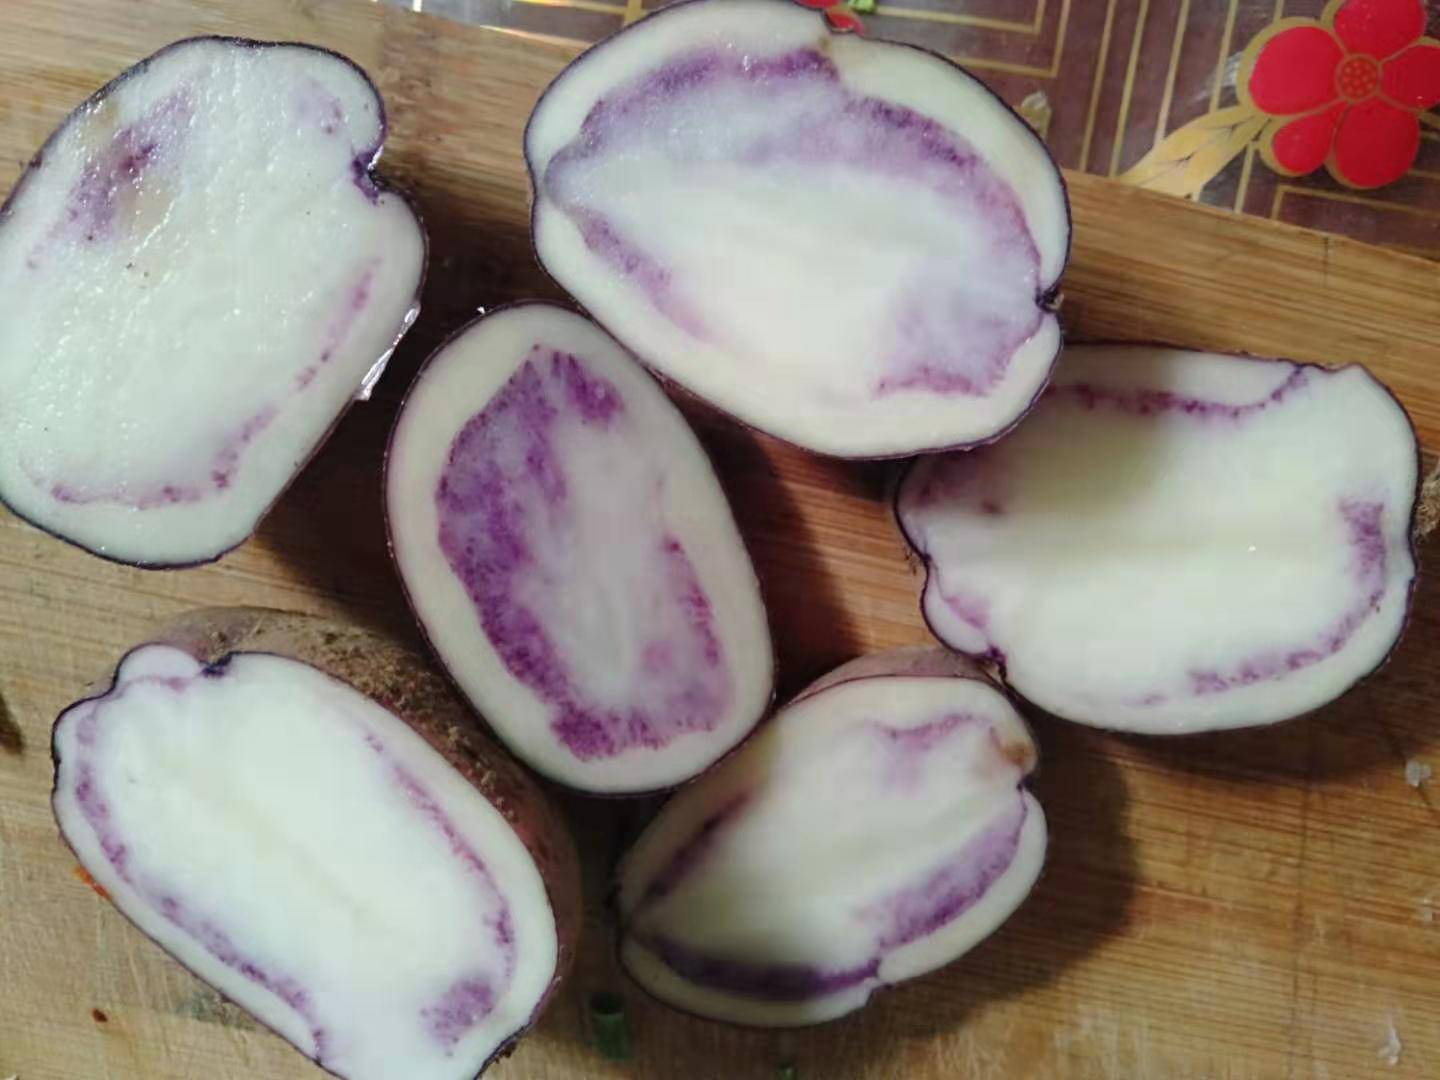 四格乌洋芋是贵州有名的地方洋芋品种，在贵州有上百年的种植历史。其名称因其主产地盘县四格乡而得名。四格乌洋芋不仅含有普通洋芋的各种营养成分，还富含花青昔类色素，使